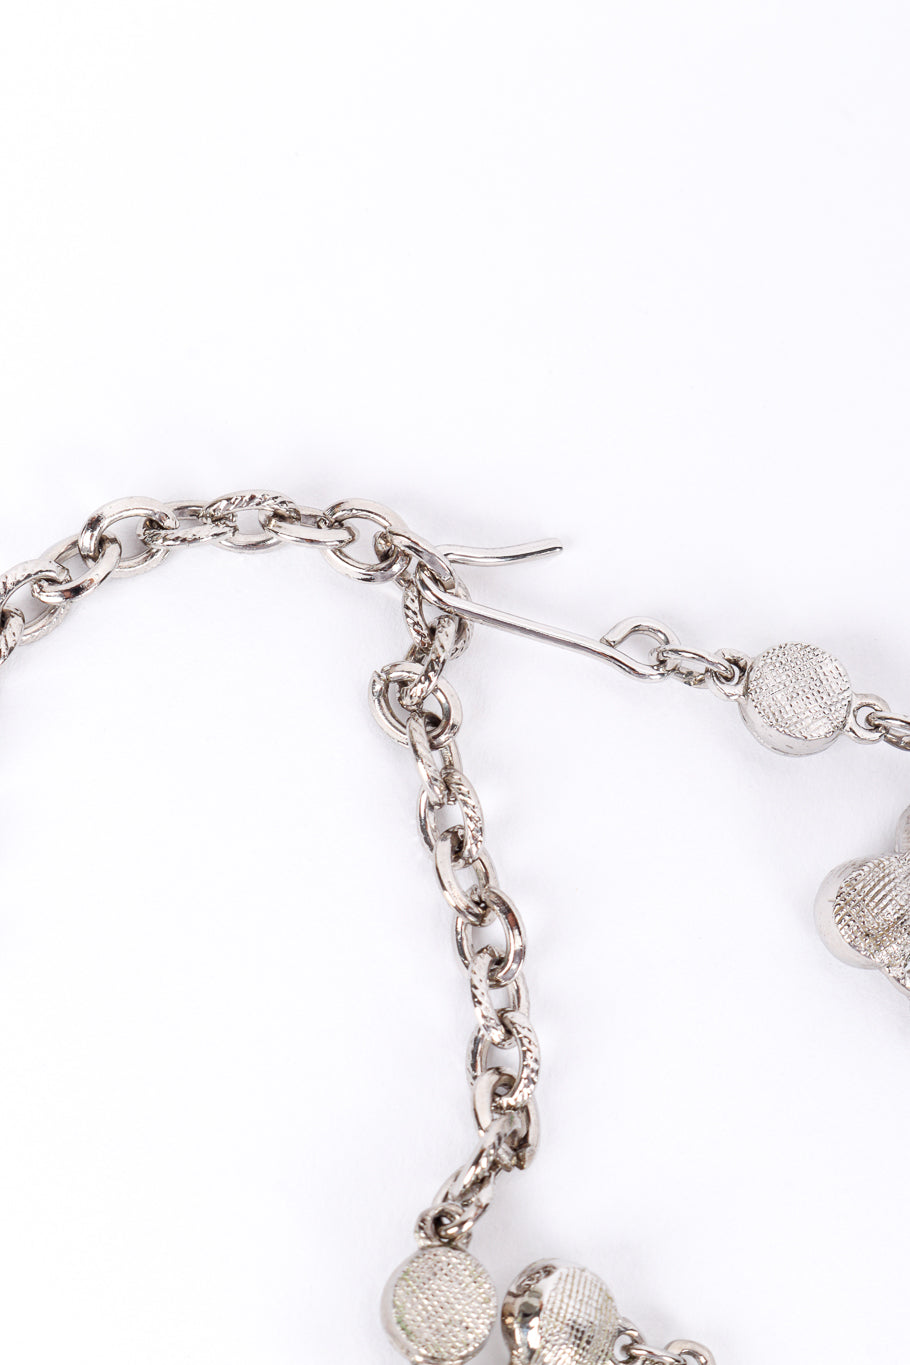 Vintage Tiered Crystal Collar Necklace hook closure @recessla